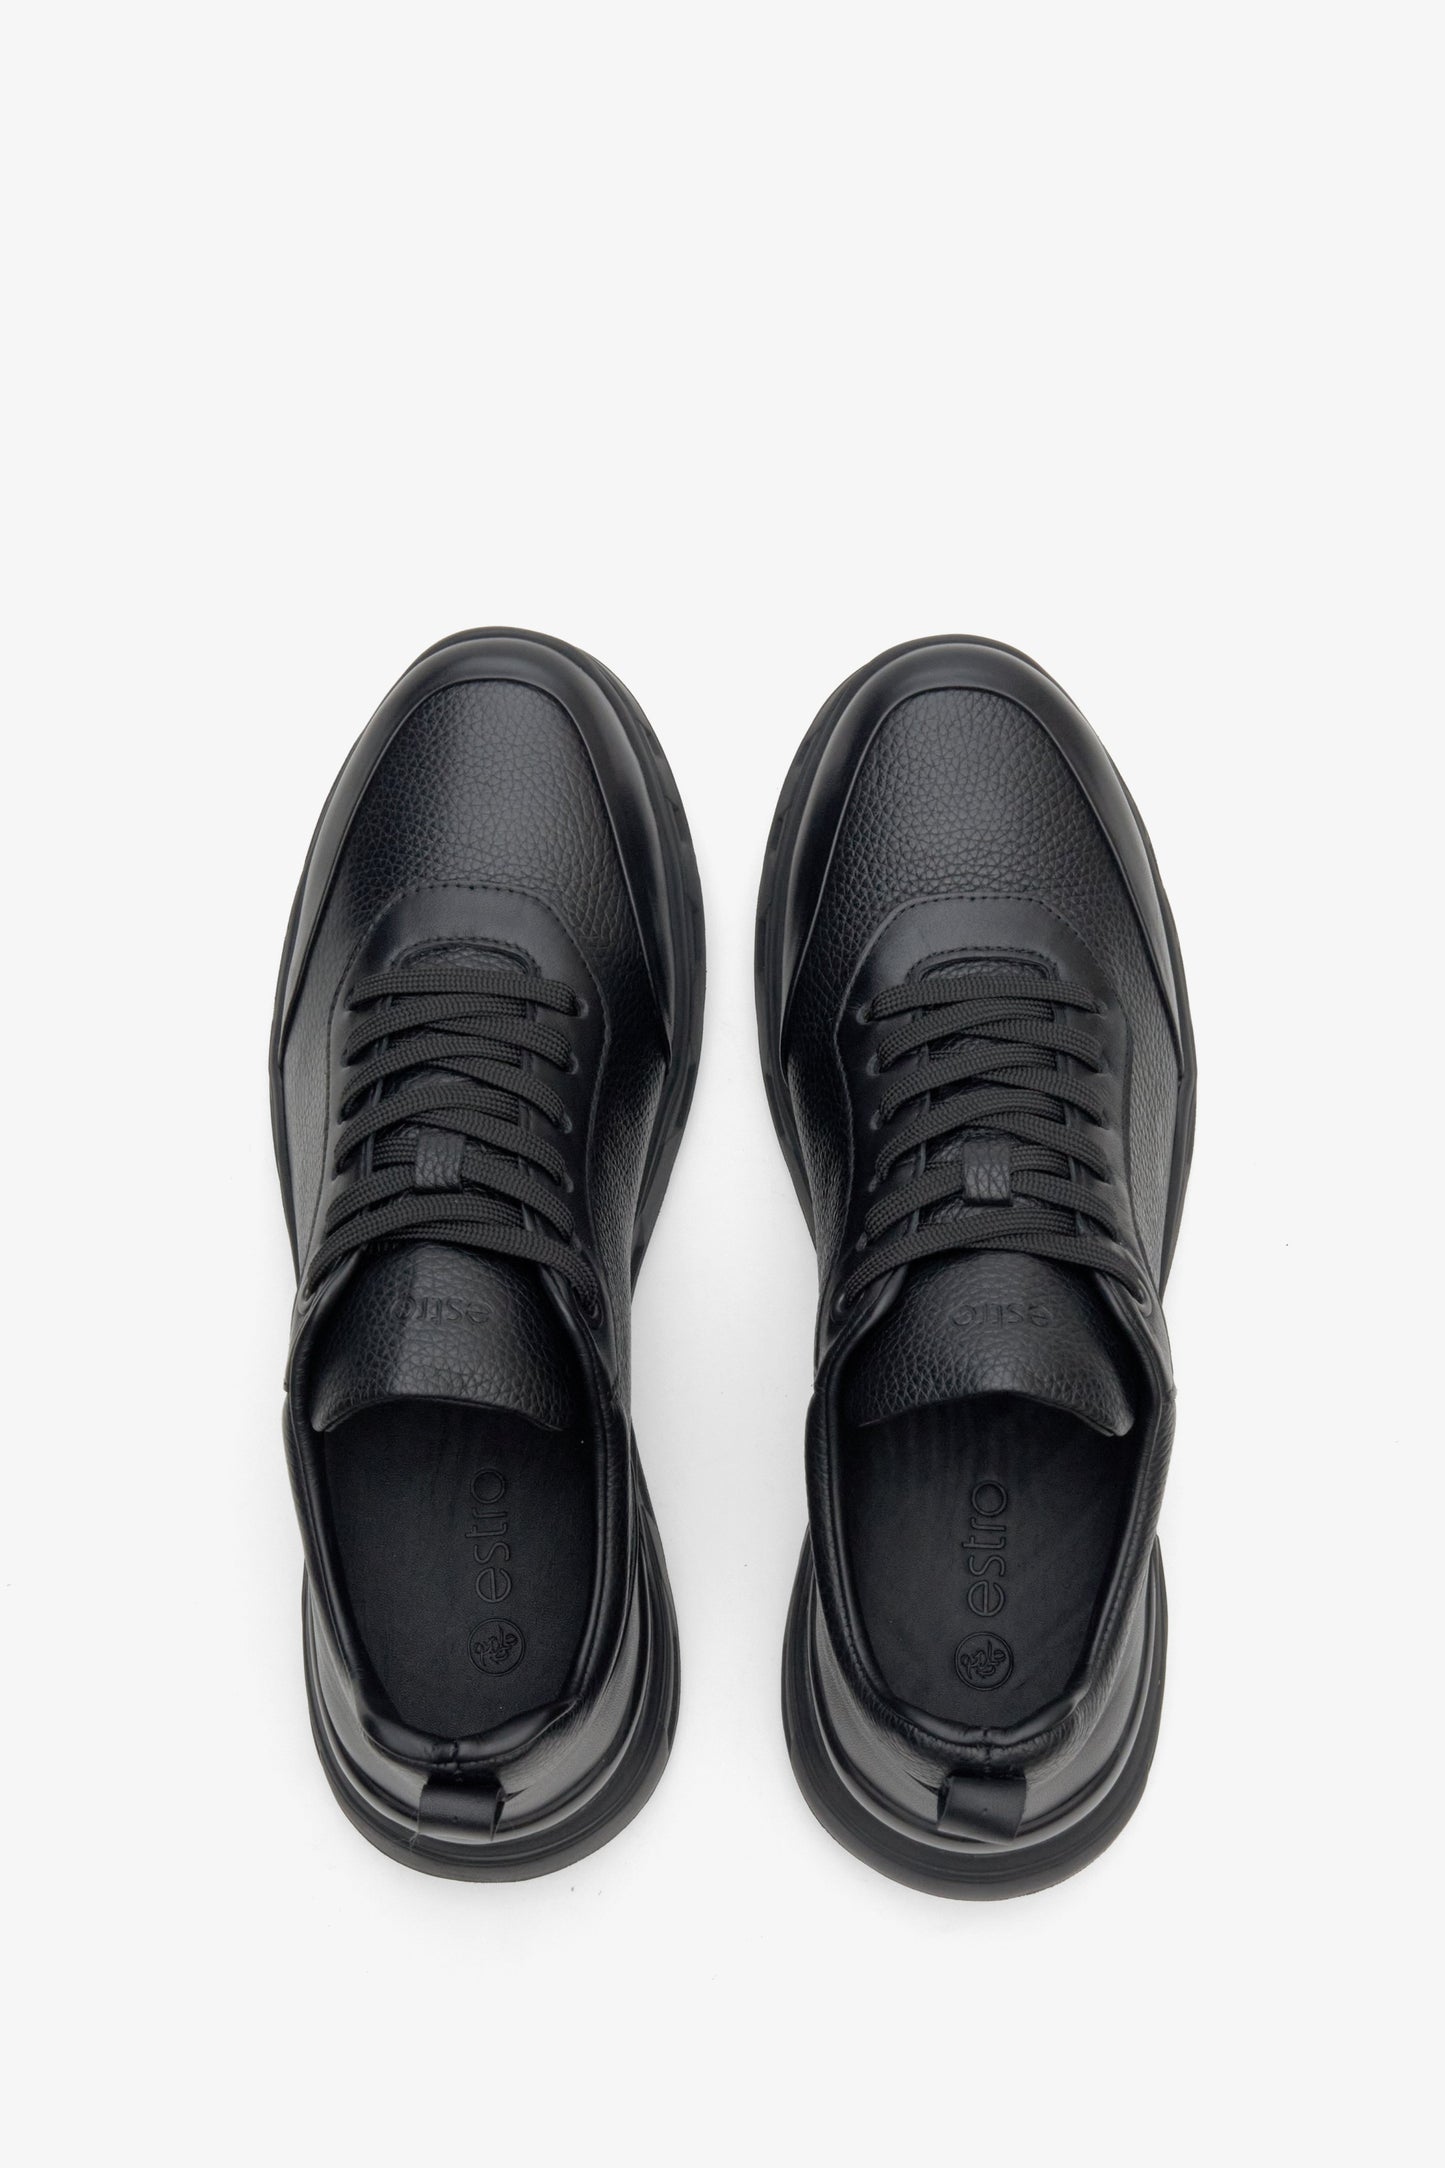 Męskie, skórzane sneakersy w kolorze czarnym marki Estro - prezentacja modelu z góry.